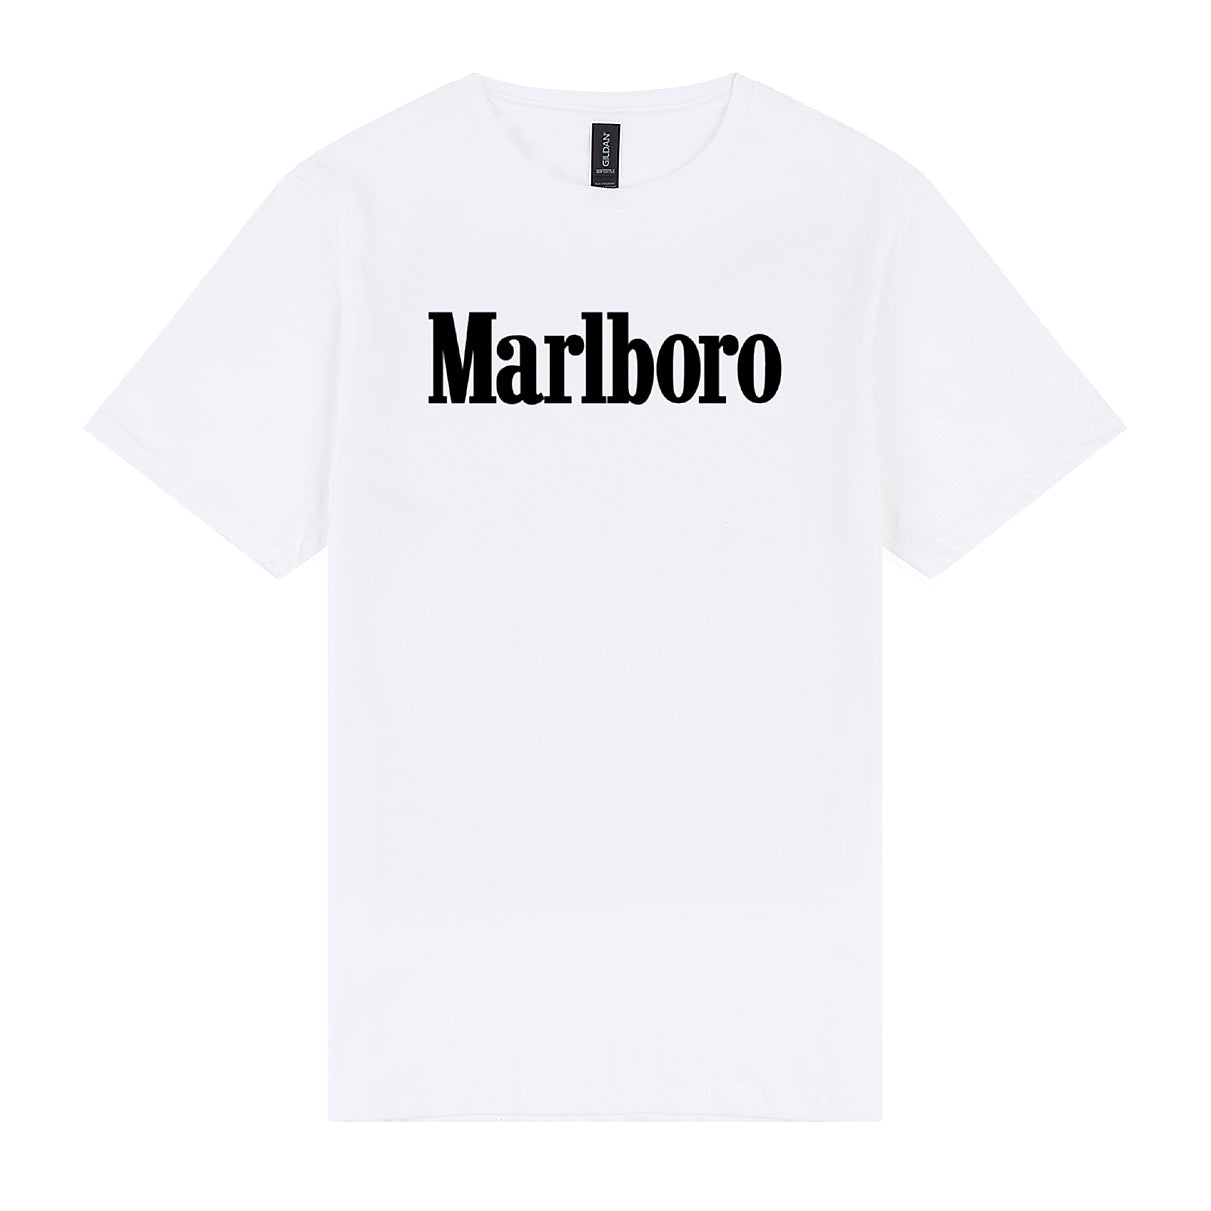 Marlboro Softstyle Tee